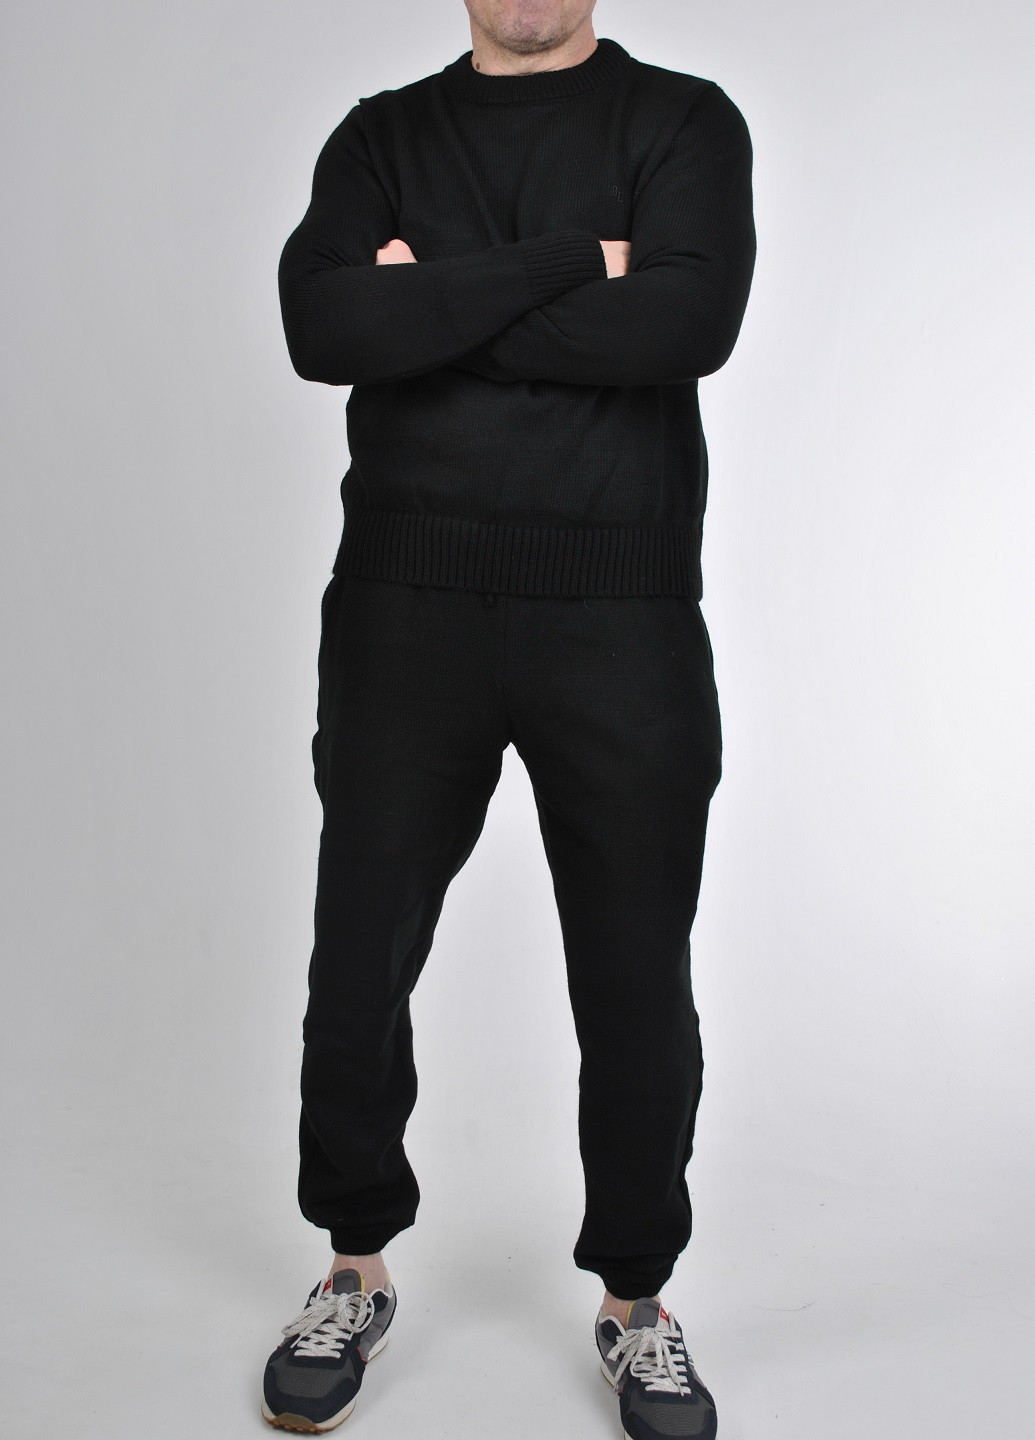 Черный зимний вязаный костюм Berta Lucci